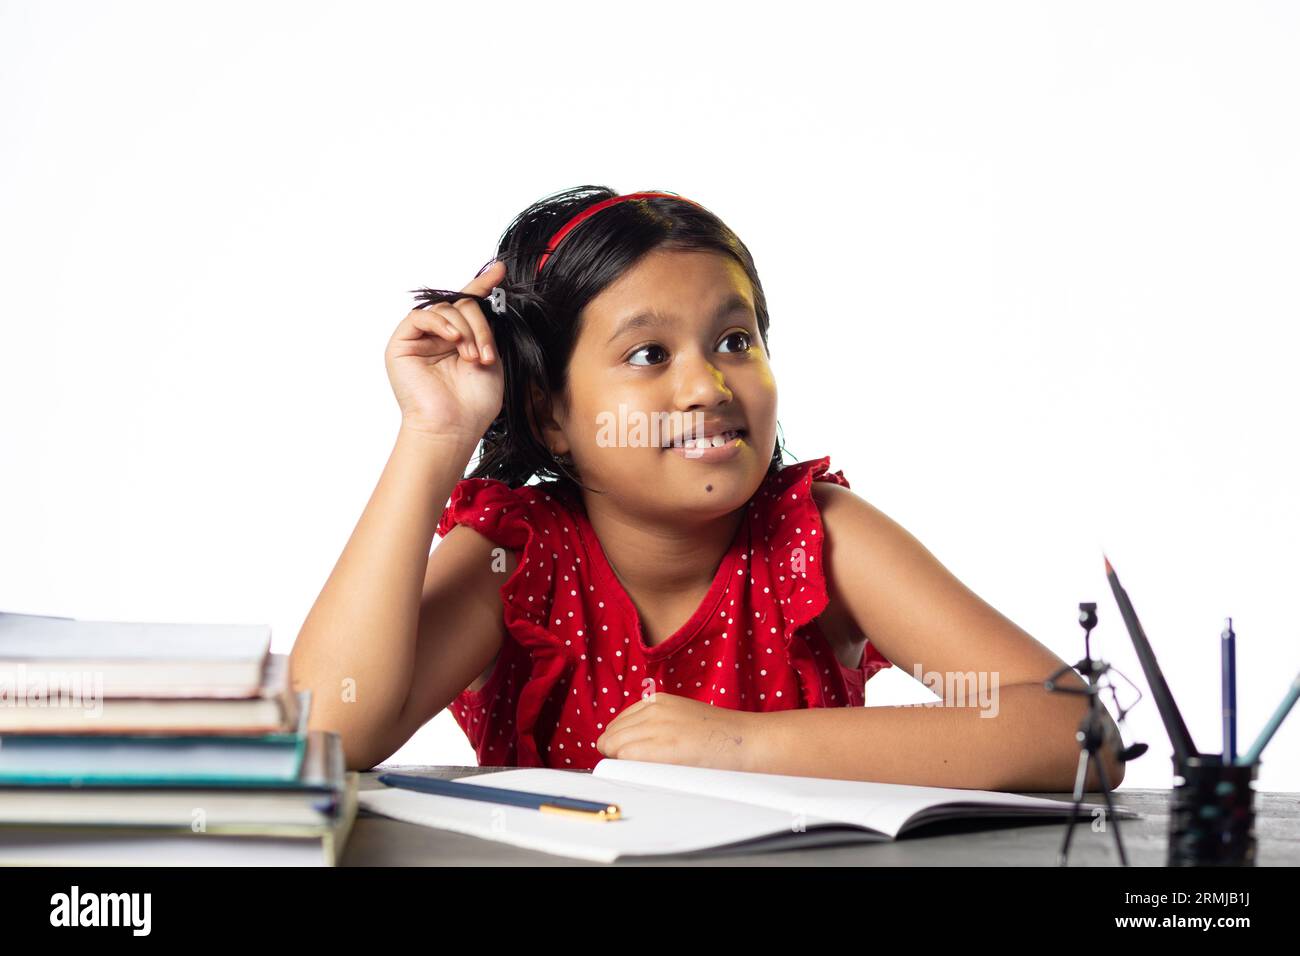 Ein hübsches indisches Mädchen, das denkt und nach oben schaut, während es am Lerntisch lernt, mit Büchern auf weißem Hintergrund Stockfoto